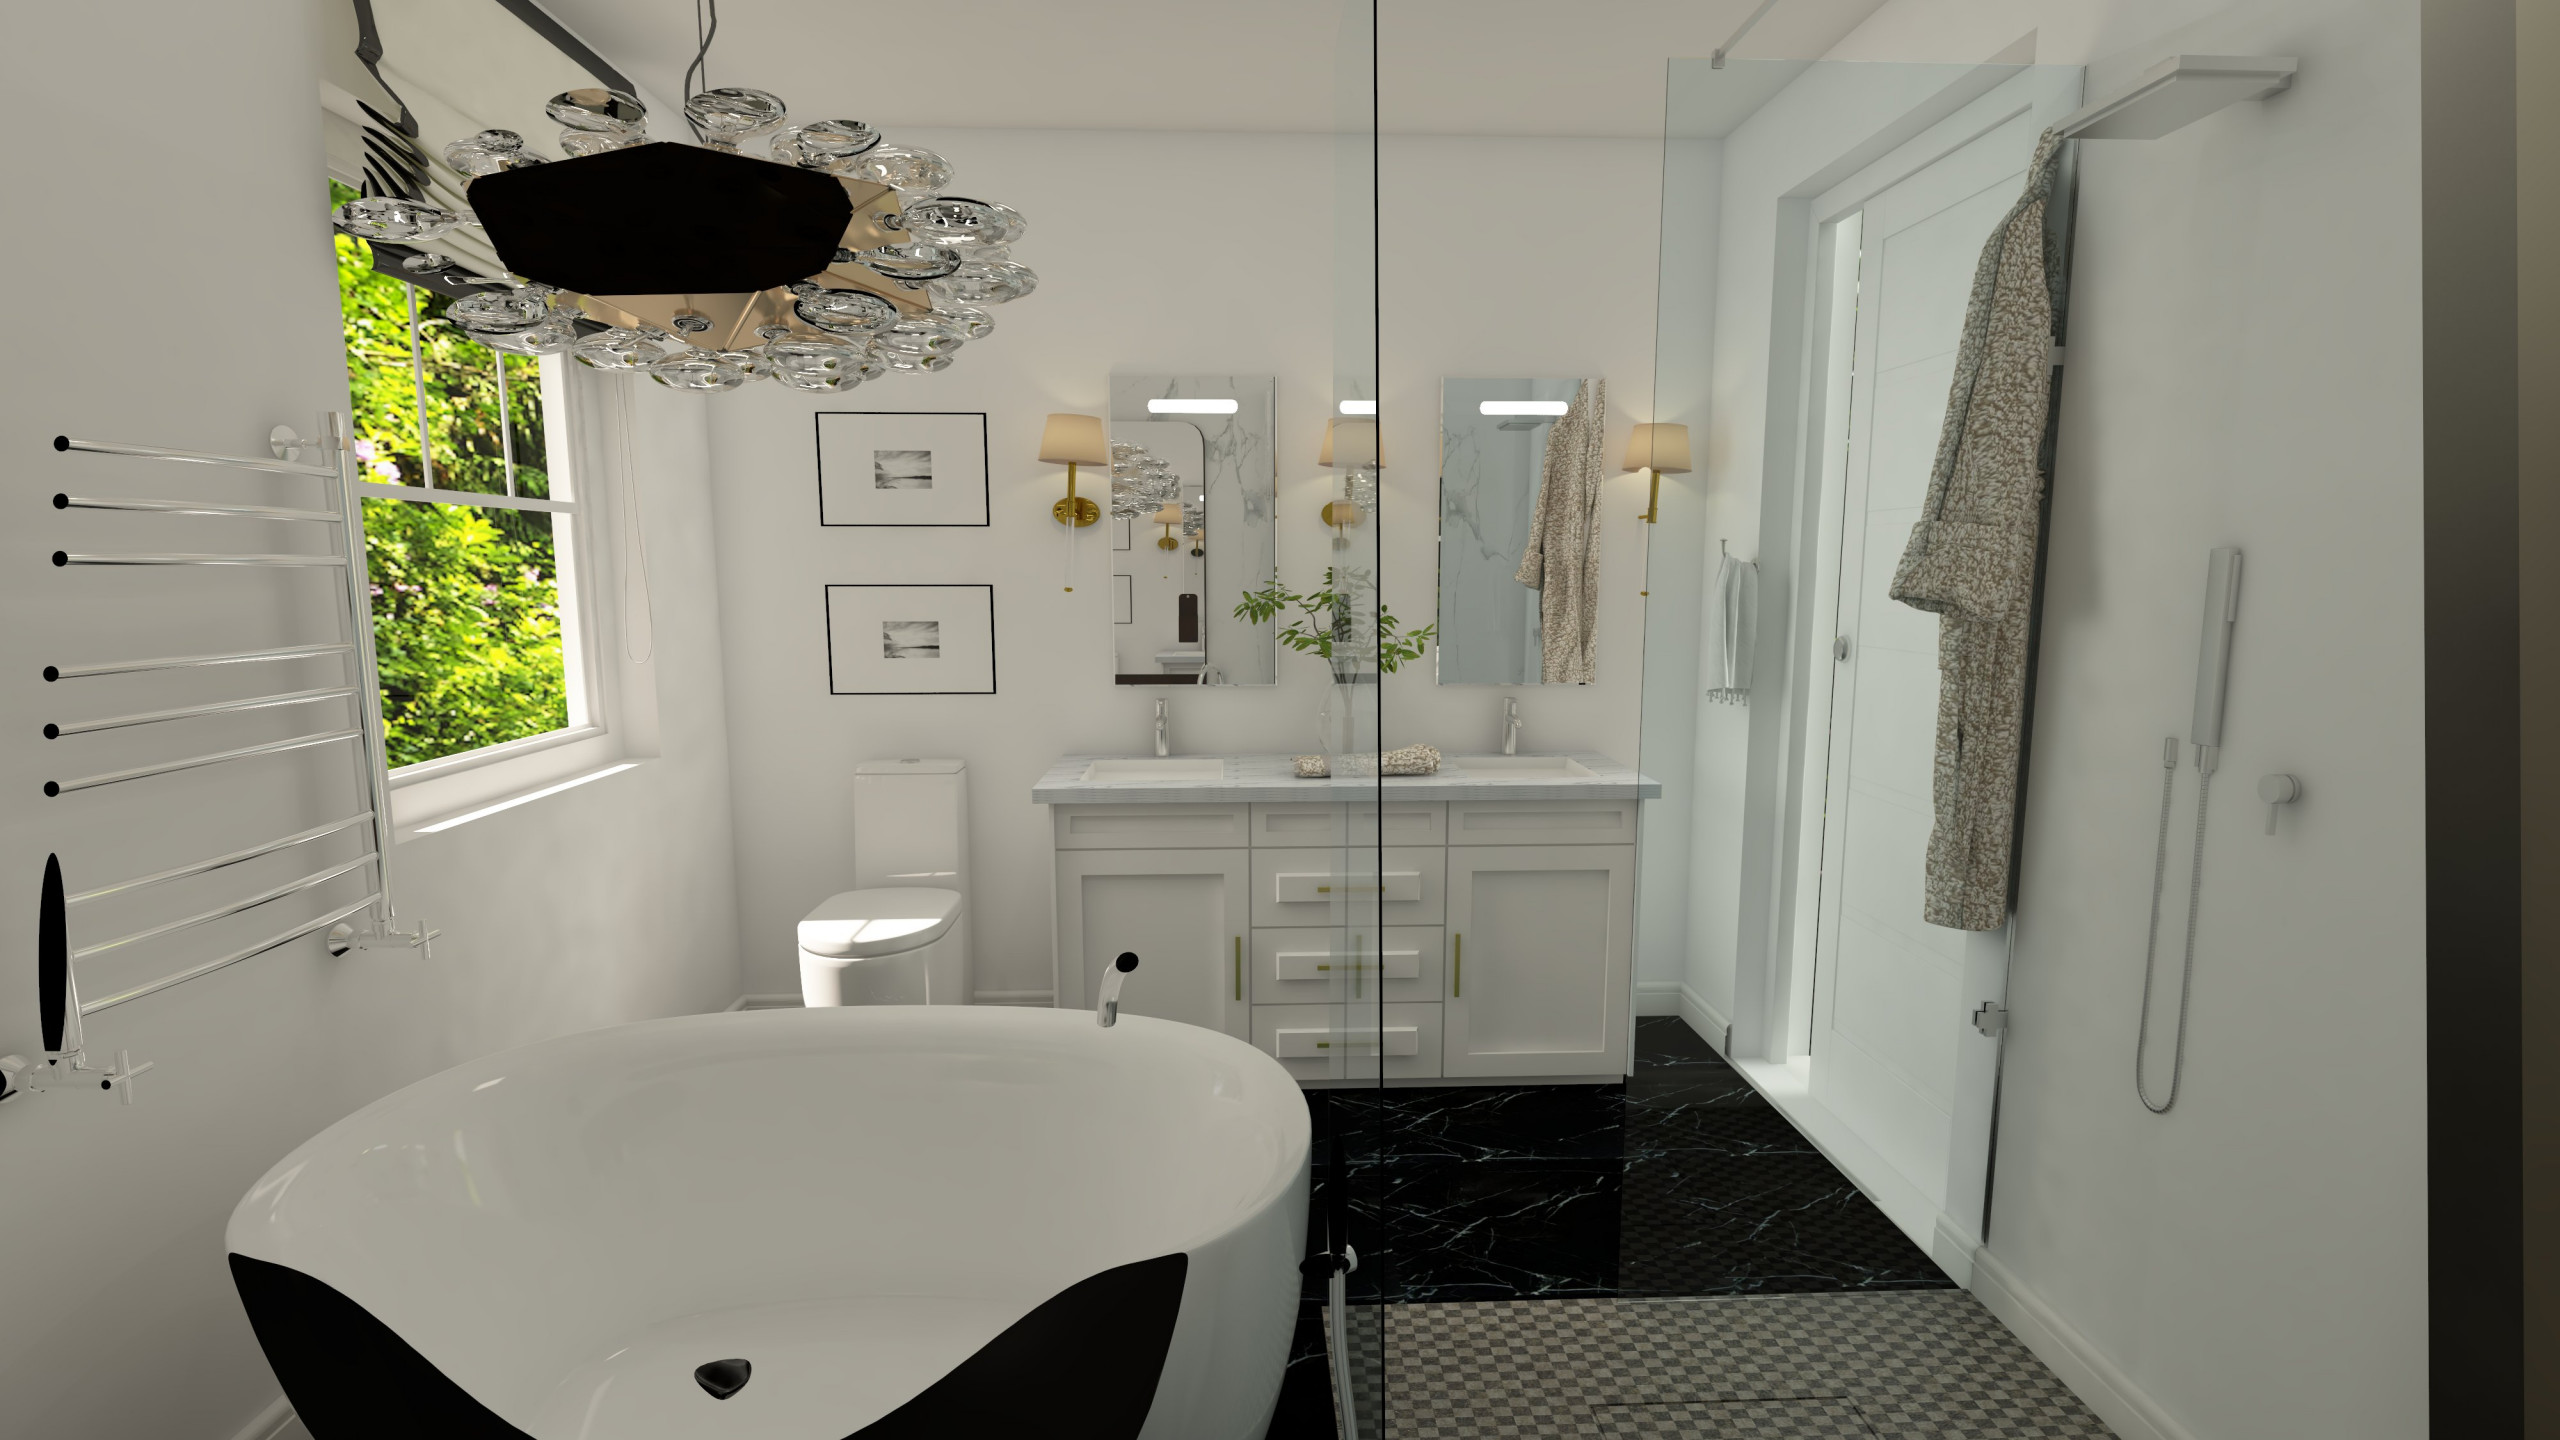 Digital Image and Design for Bathroom Remodel